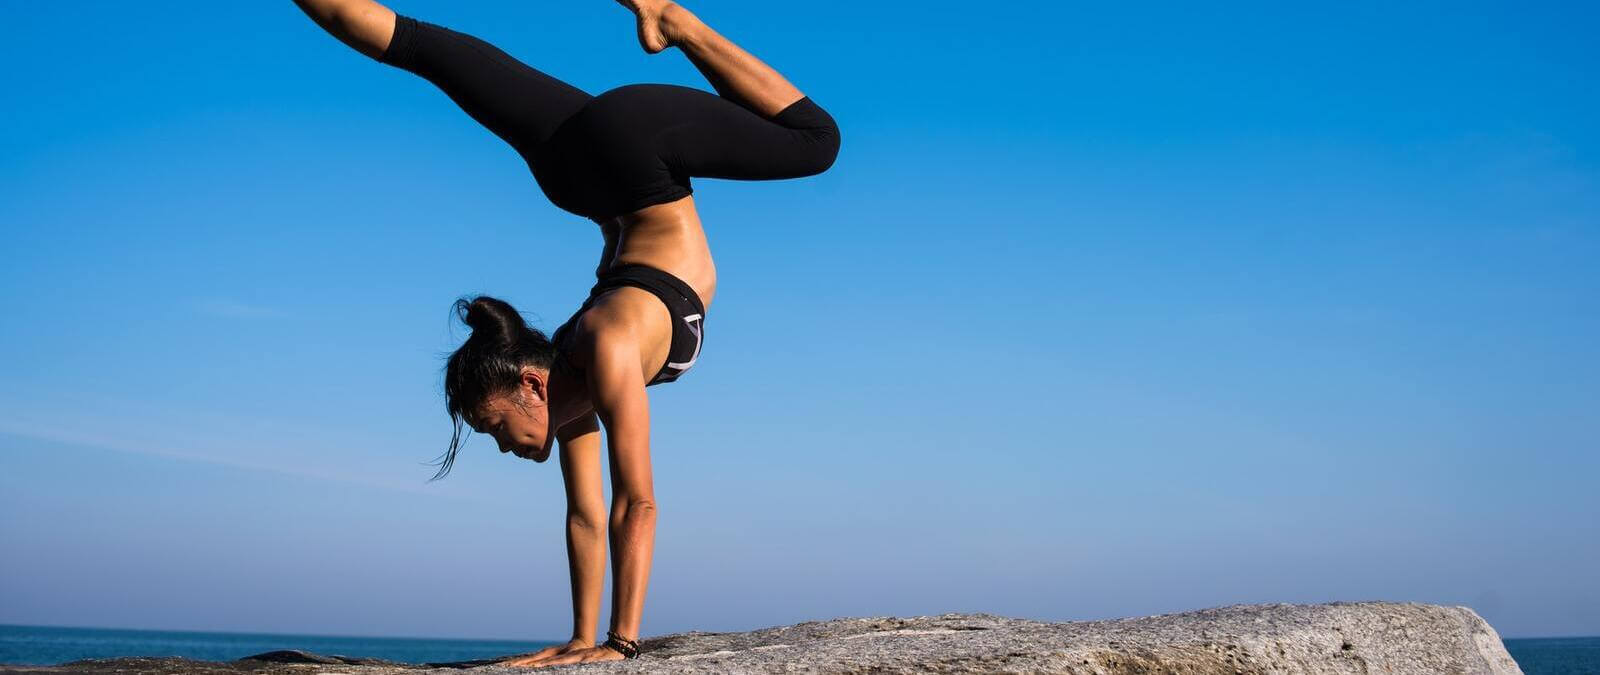 No Hay Evidencias Cient Ficas De Que Las Posturas Invertidas Como Hacer El Pino En Yoga Y